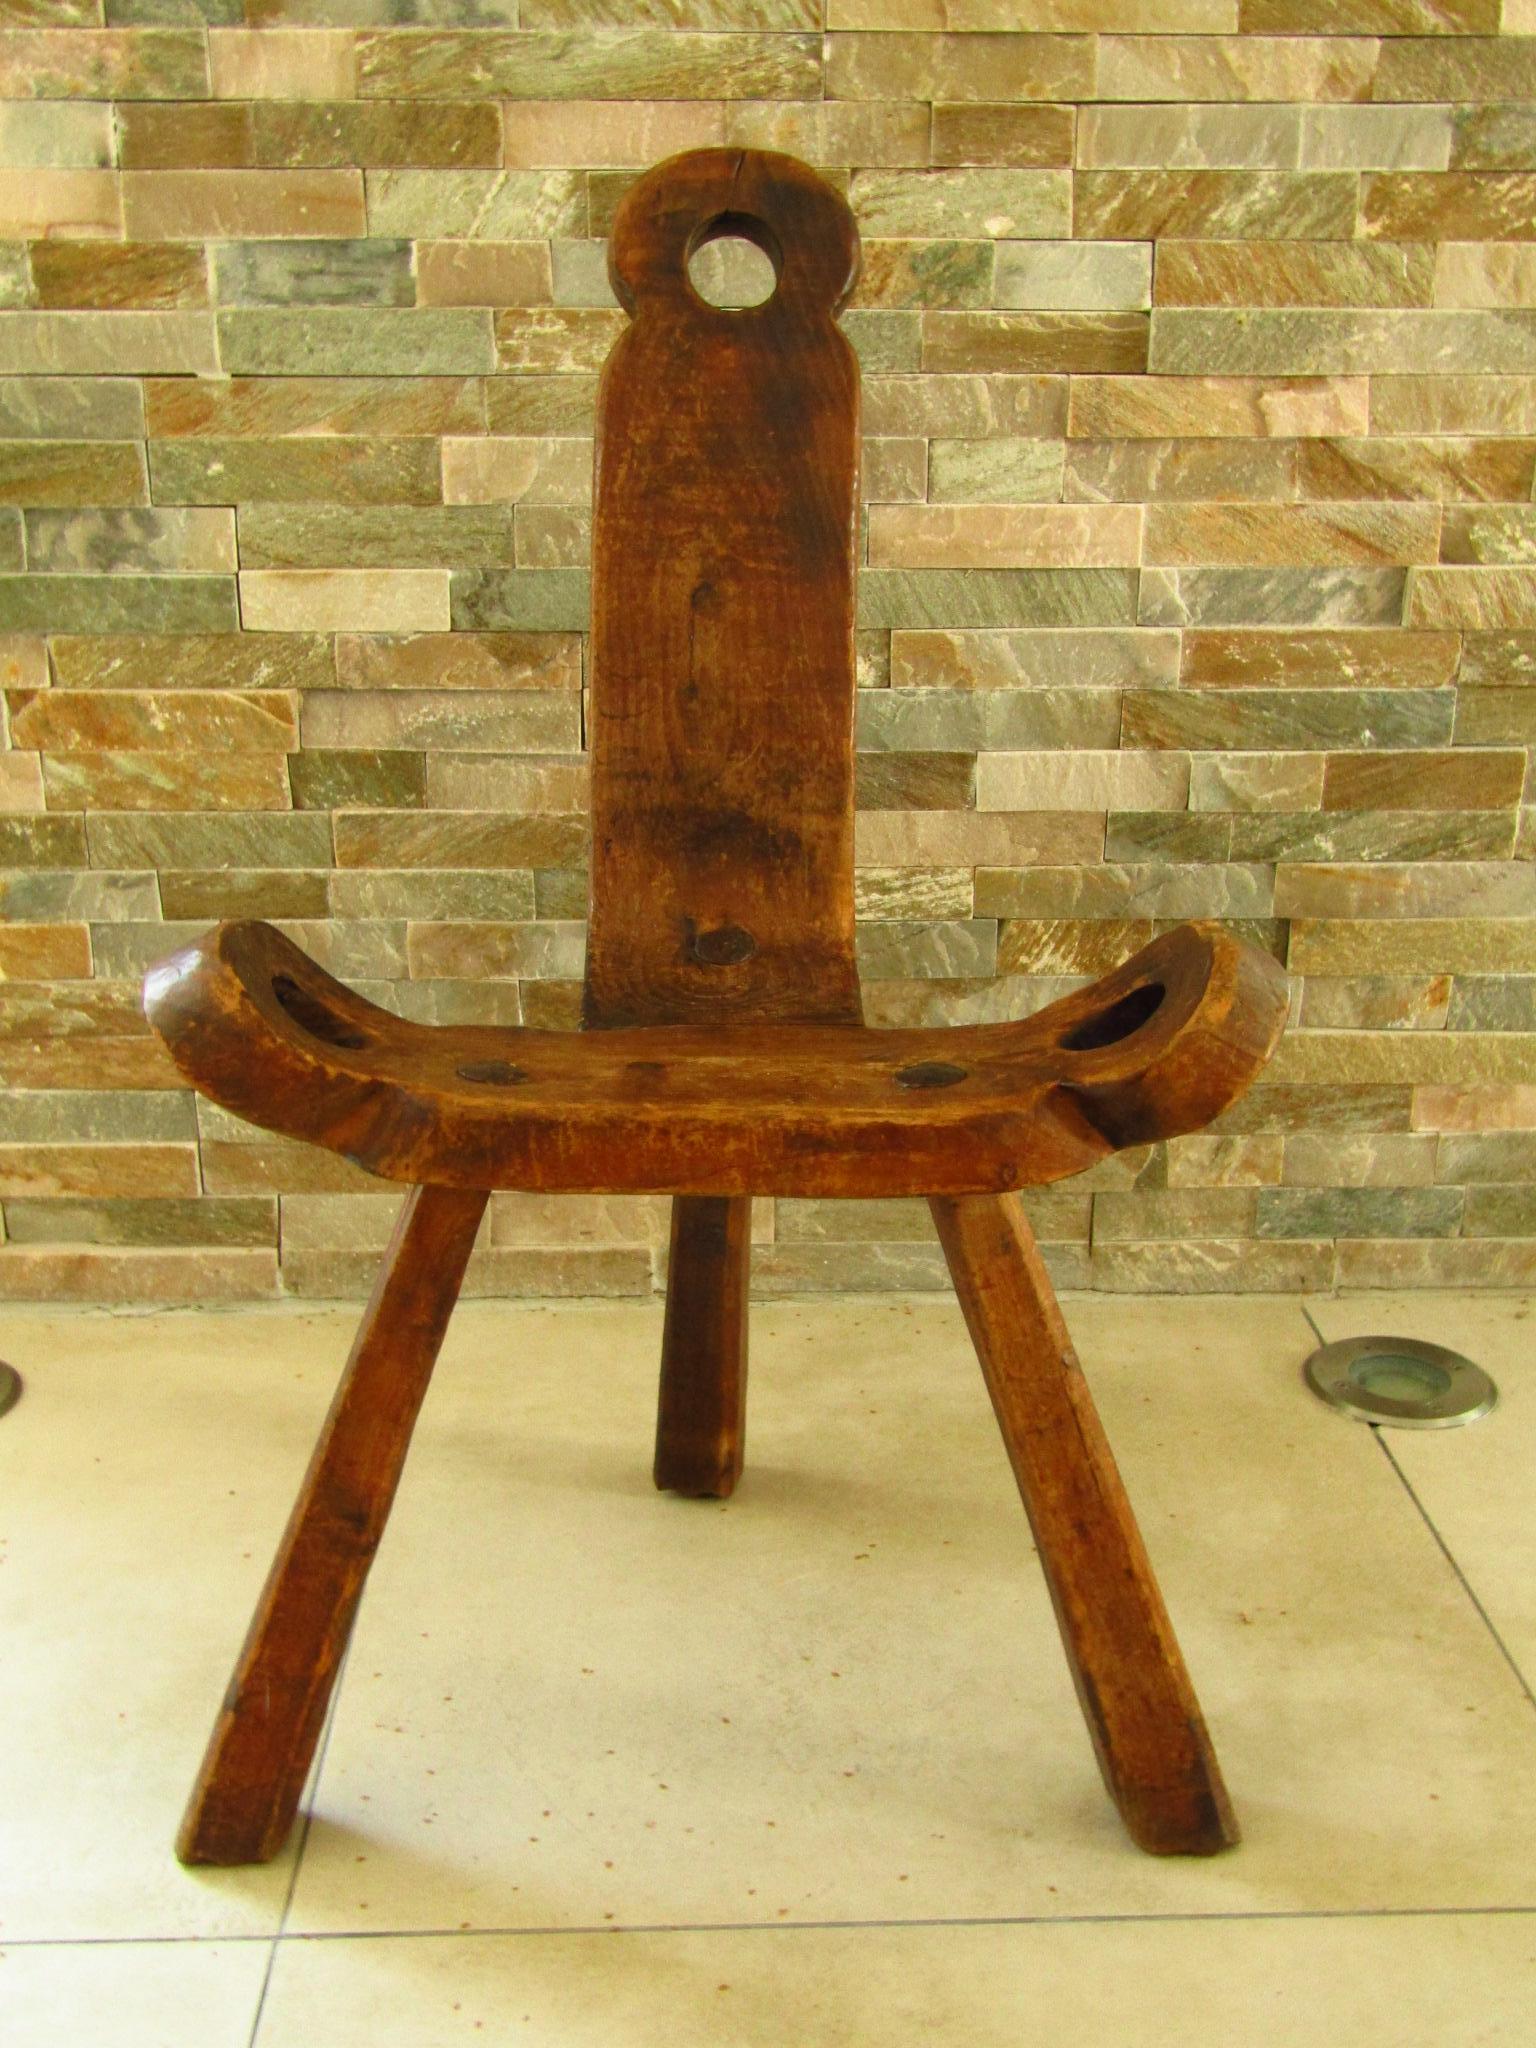 Primitive Rustic Chair Stool, Austria 18th Century 12